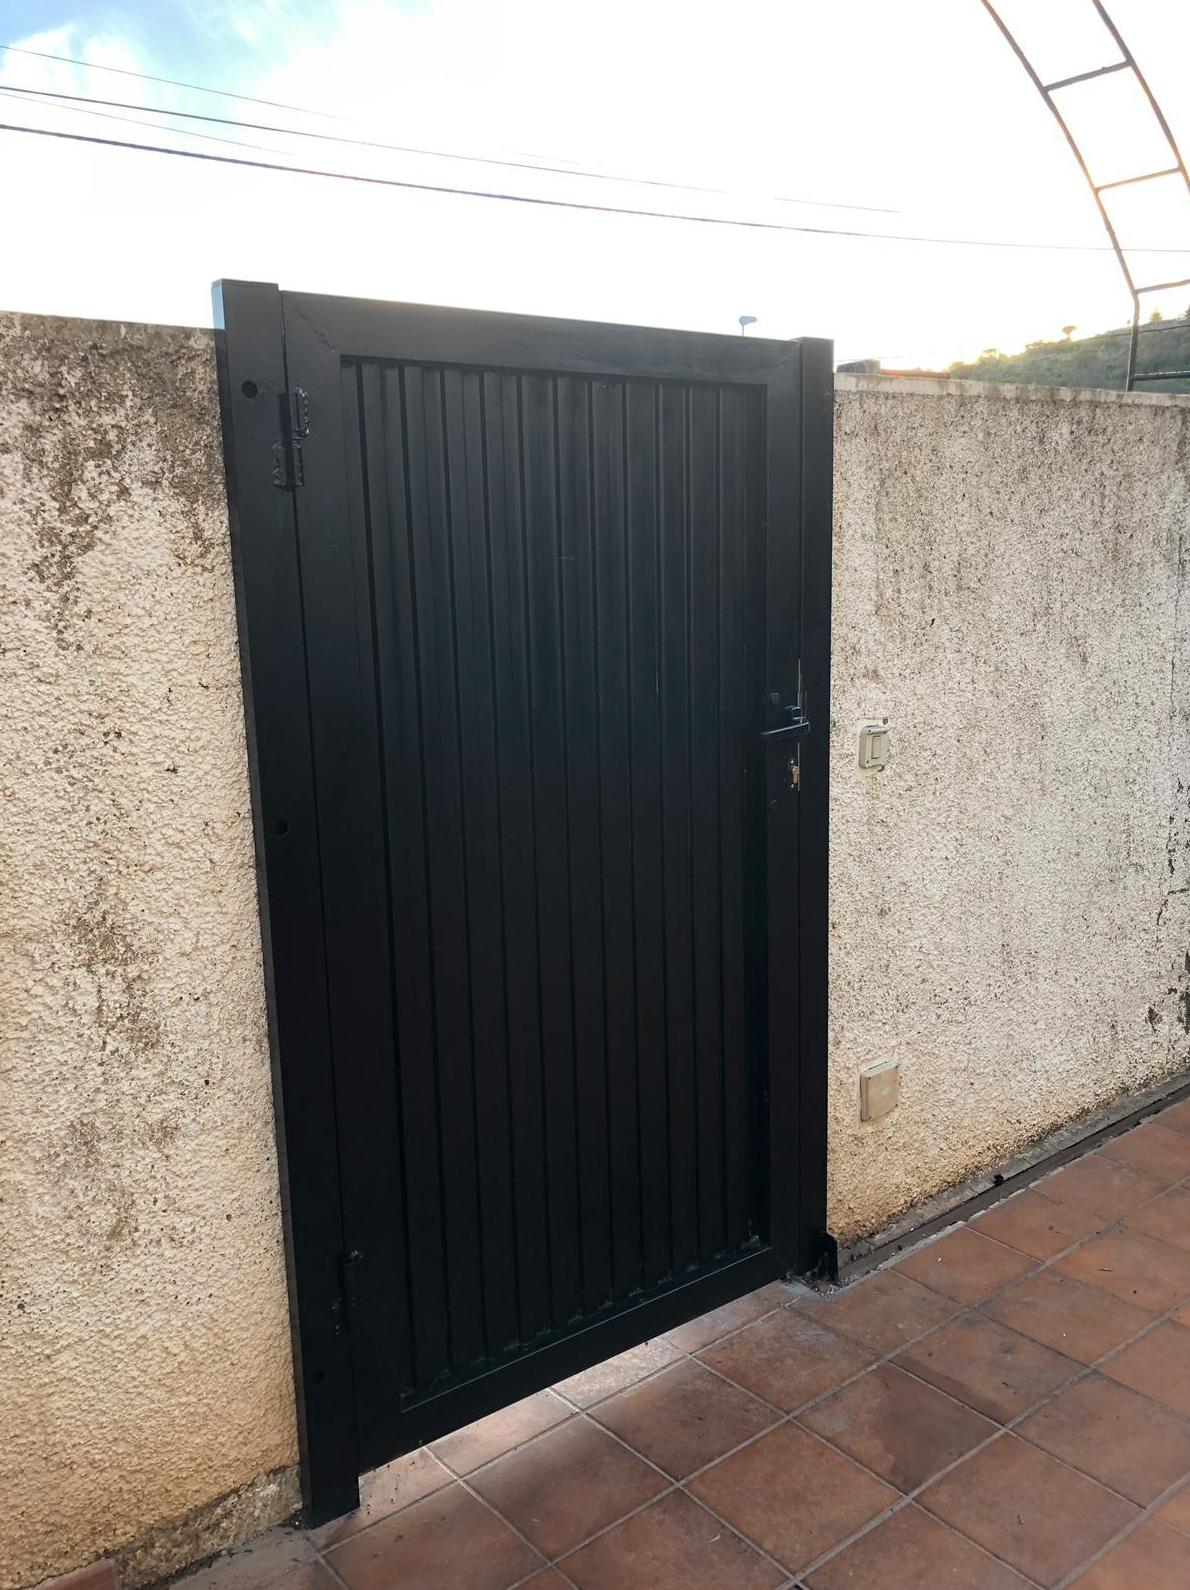 Puertas de garaje en Tenerife  Reparaciones y Automatismos LGH